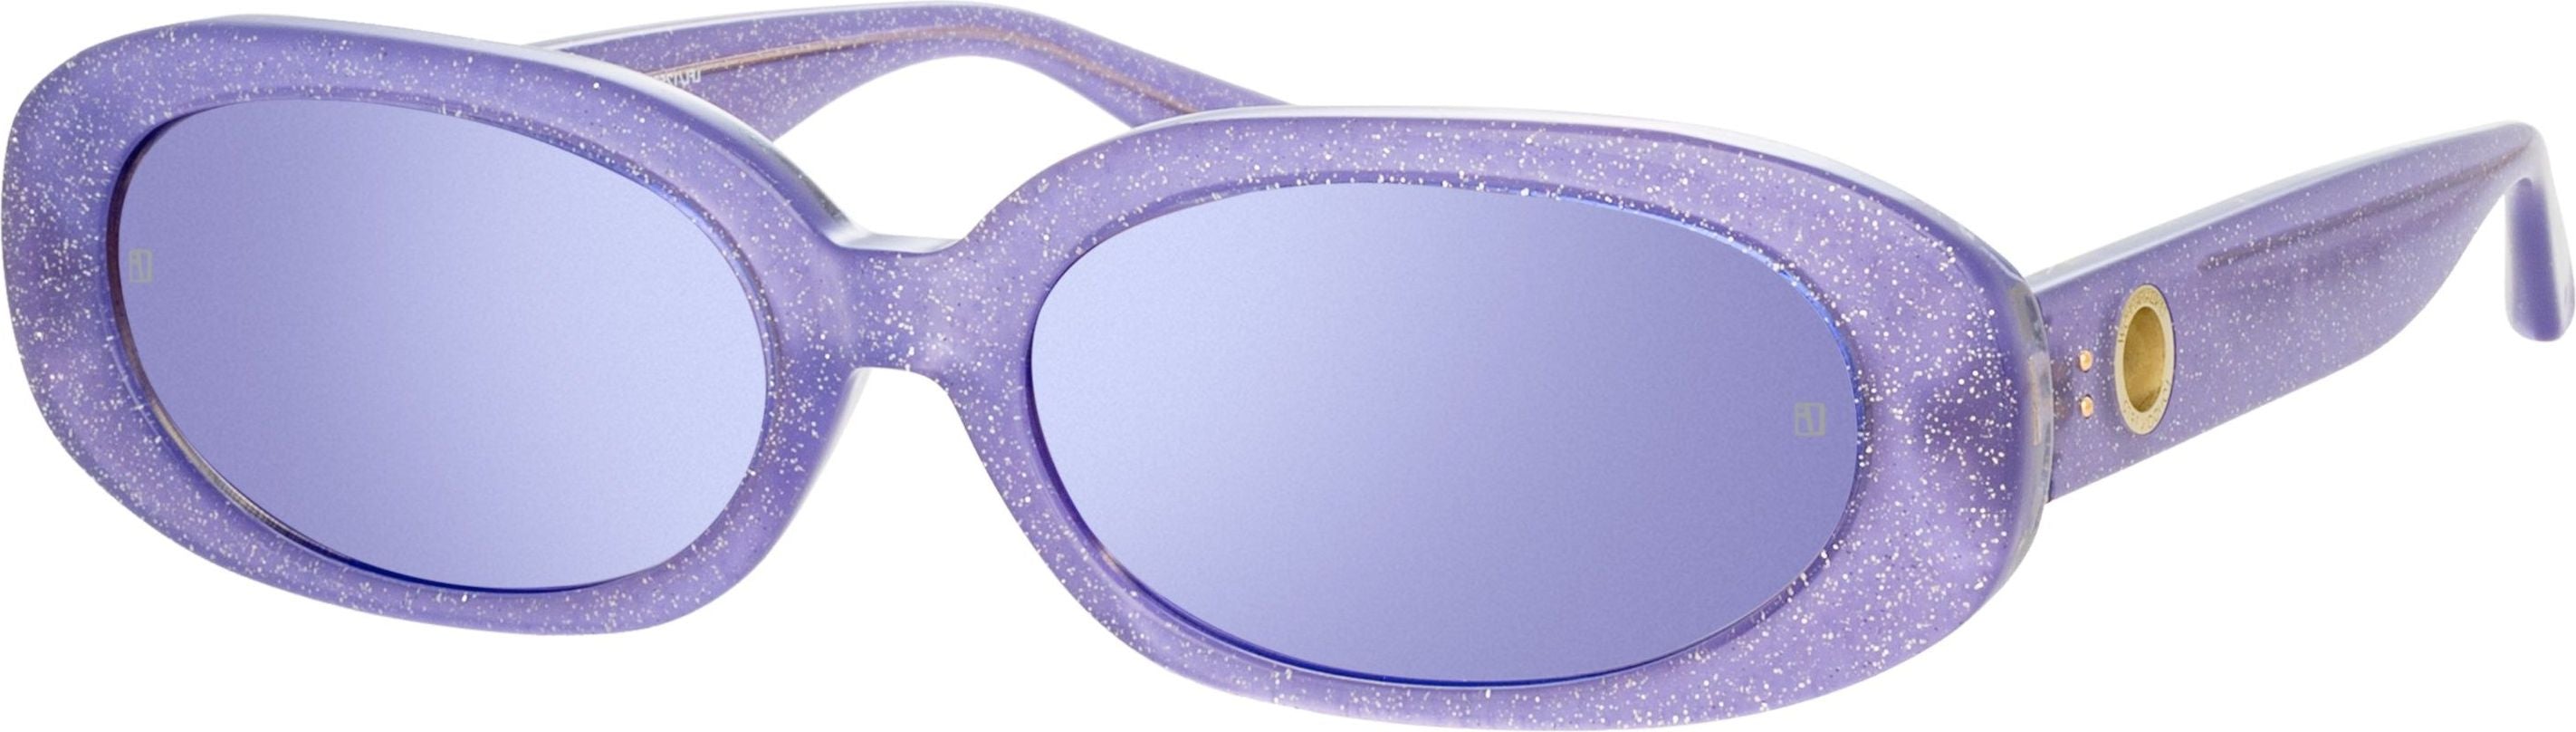 Color_LFL1252C8SUN - Cara Oval Sunglasses in Purple